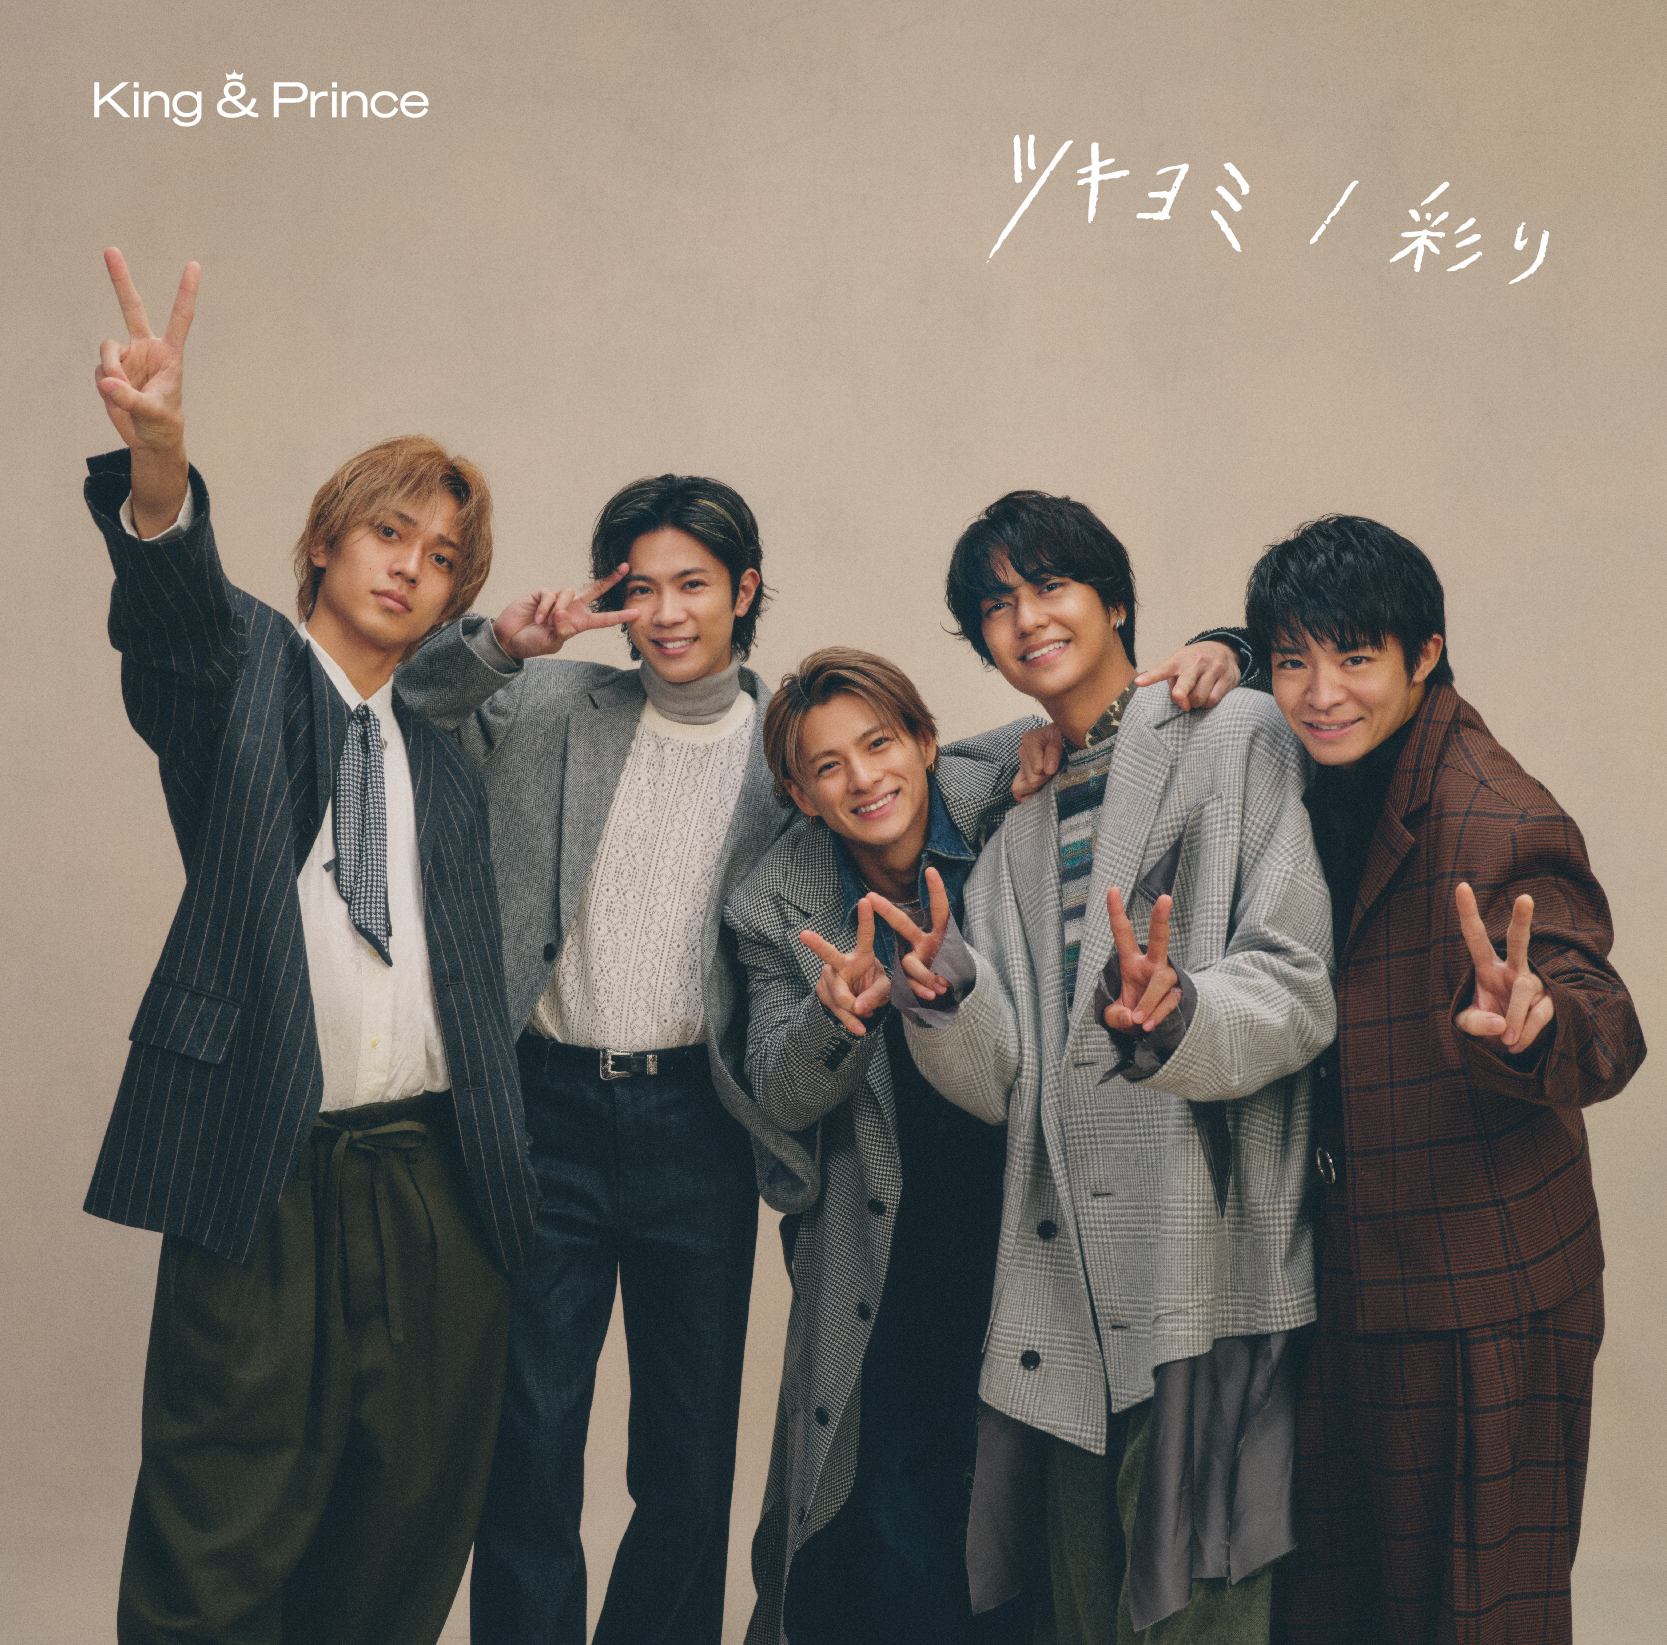 King & Prince、11th Single「ツキヨミ / 彩り」のジャケット写真と ...